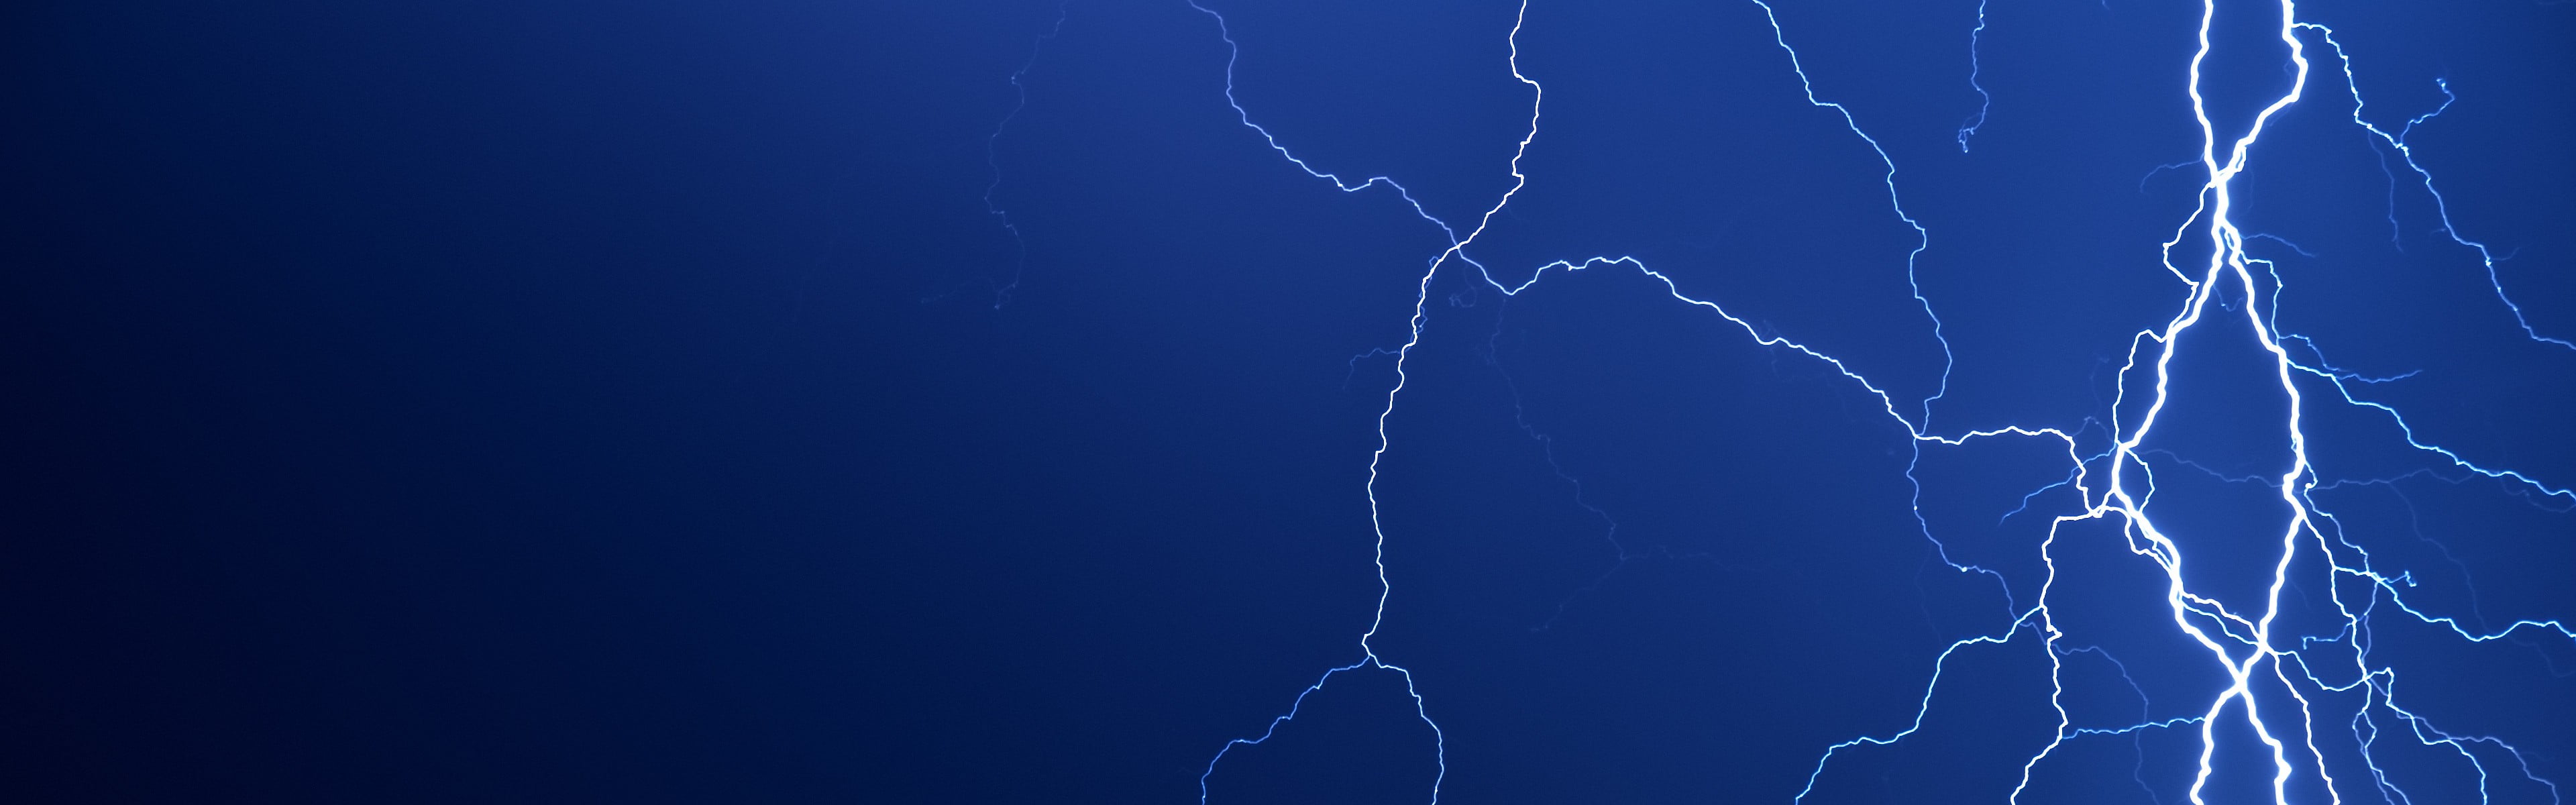 thunder illustration, lightning